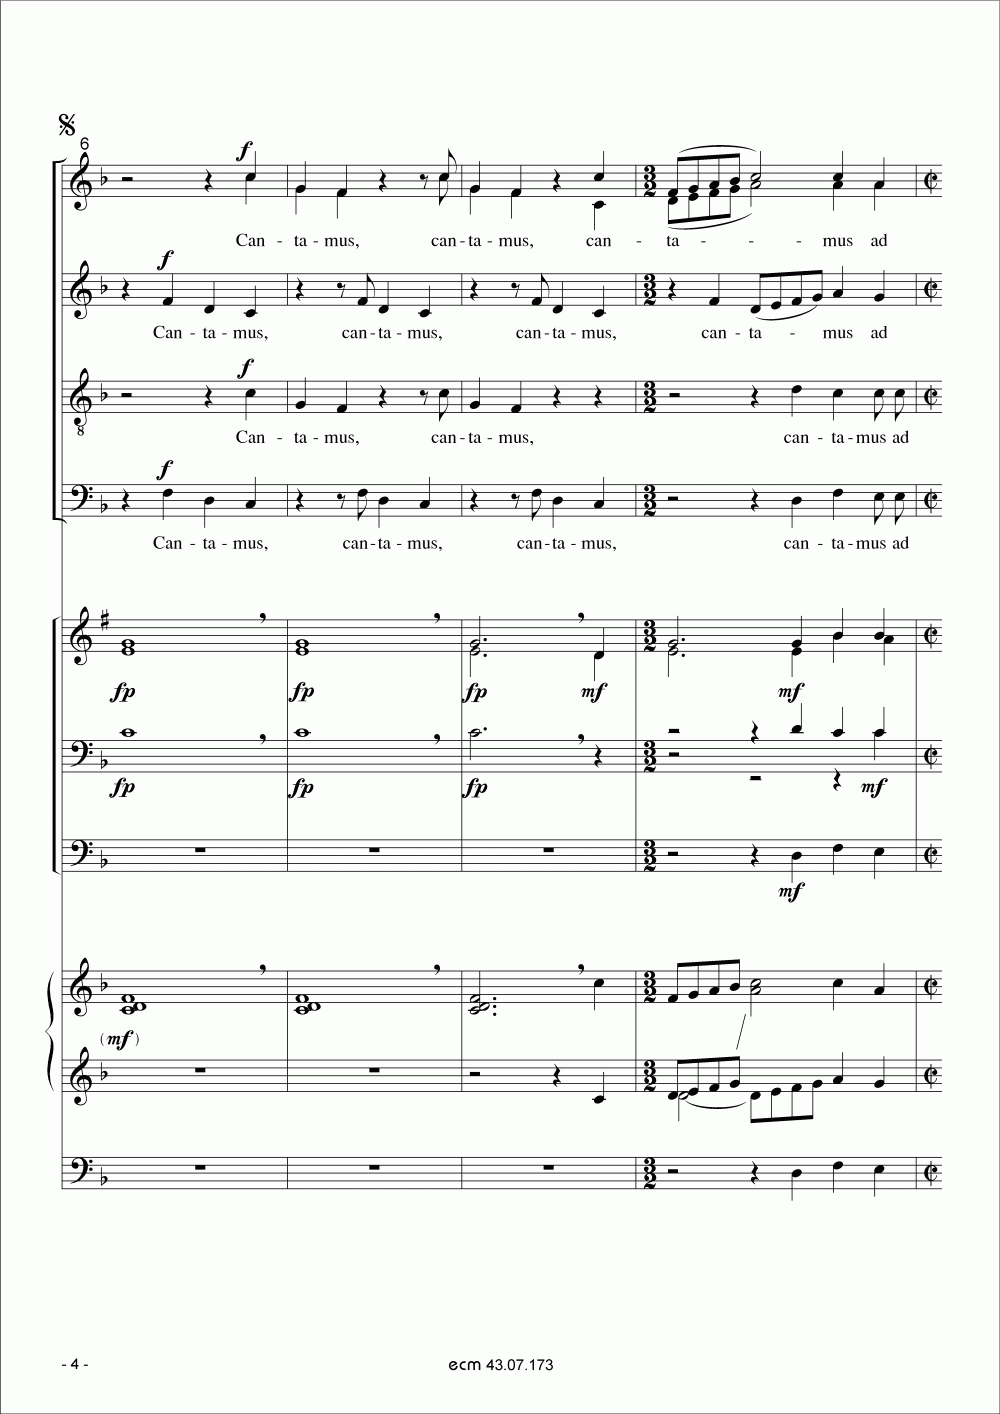 Cantamus ad gloriam musicae (Bläser)